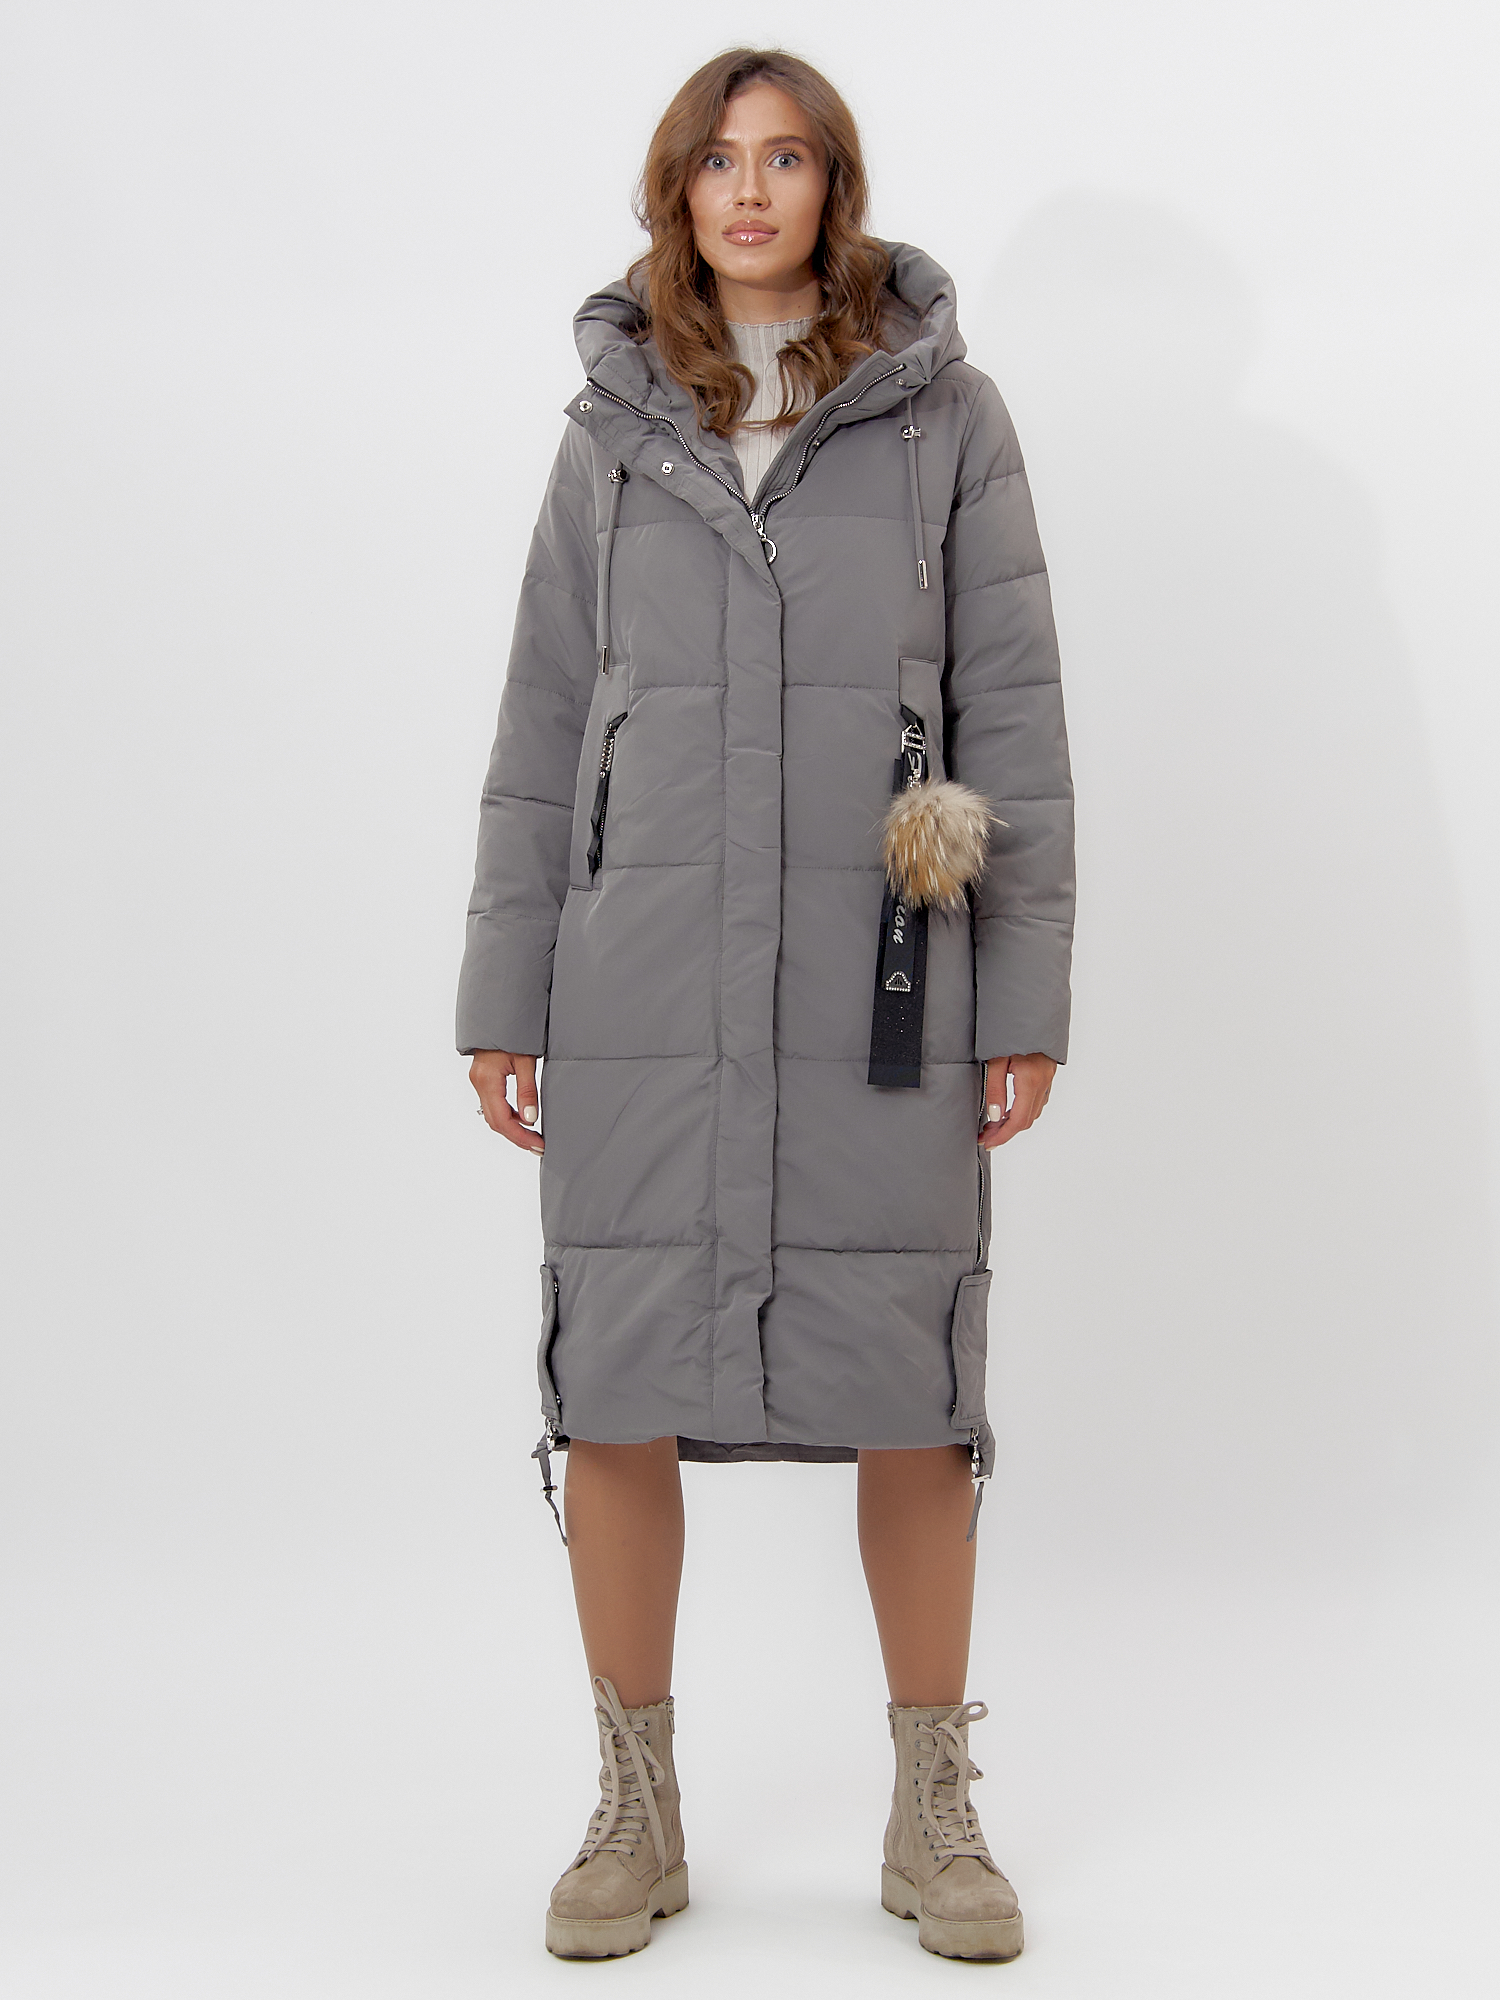 Купить Пальто утепленное женское зимние серого цвета 11207Sr